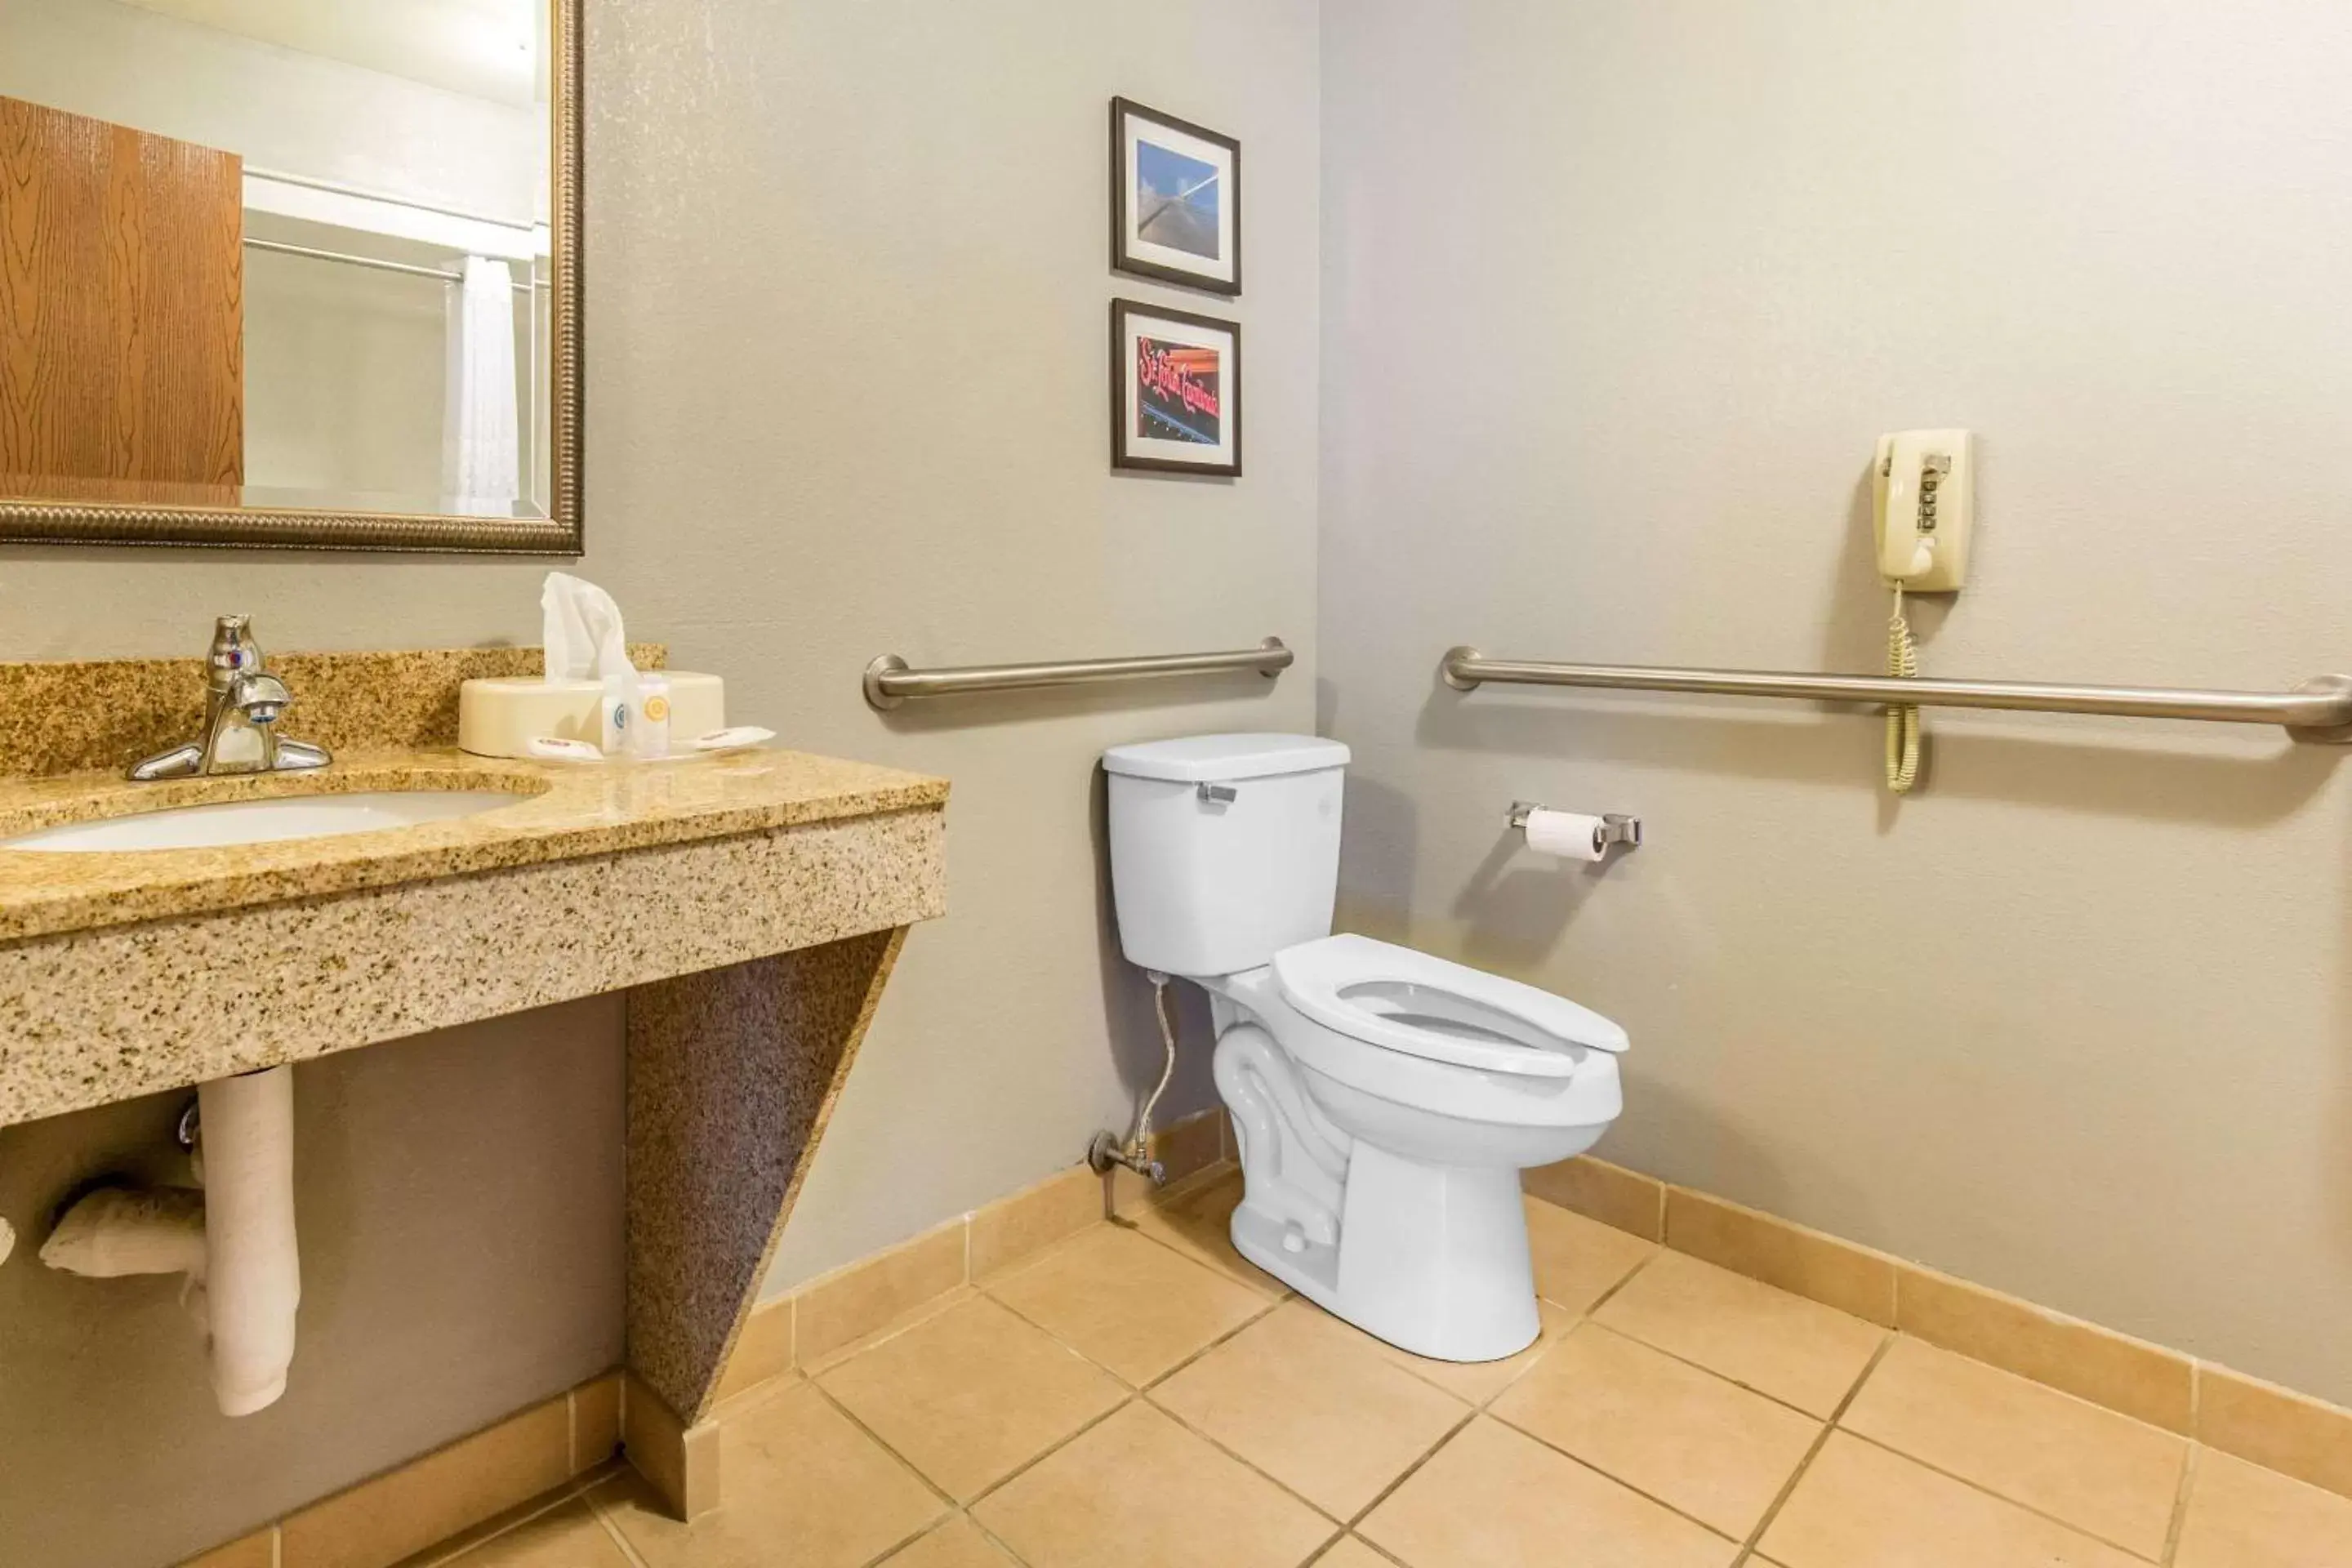 Toilet, Bathroom in Comfort Suites Fairview Heights